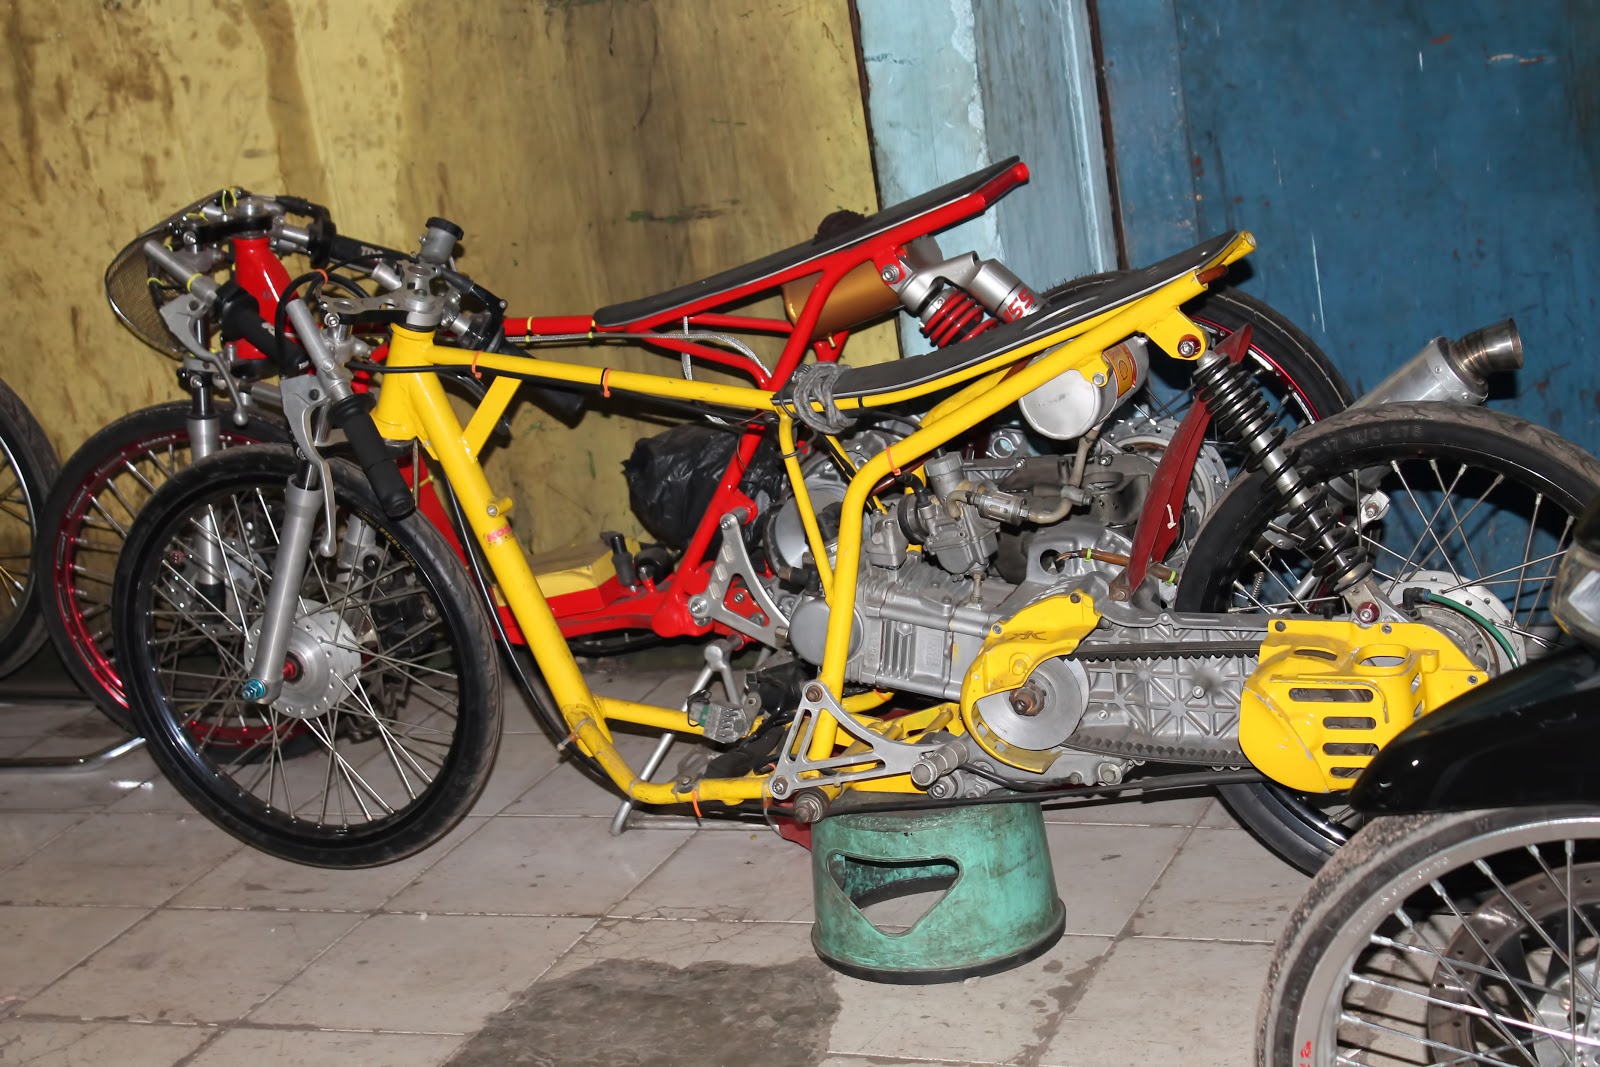  Gambar  Sketsa Sepeda Motor  Drag Terunik Gentong Modifikasi